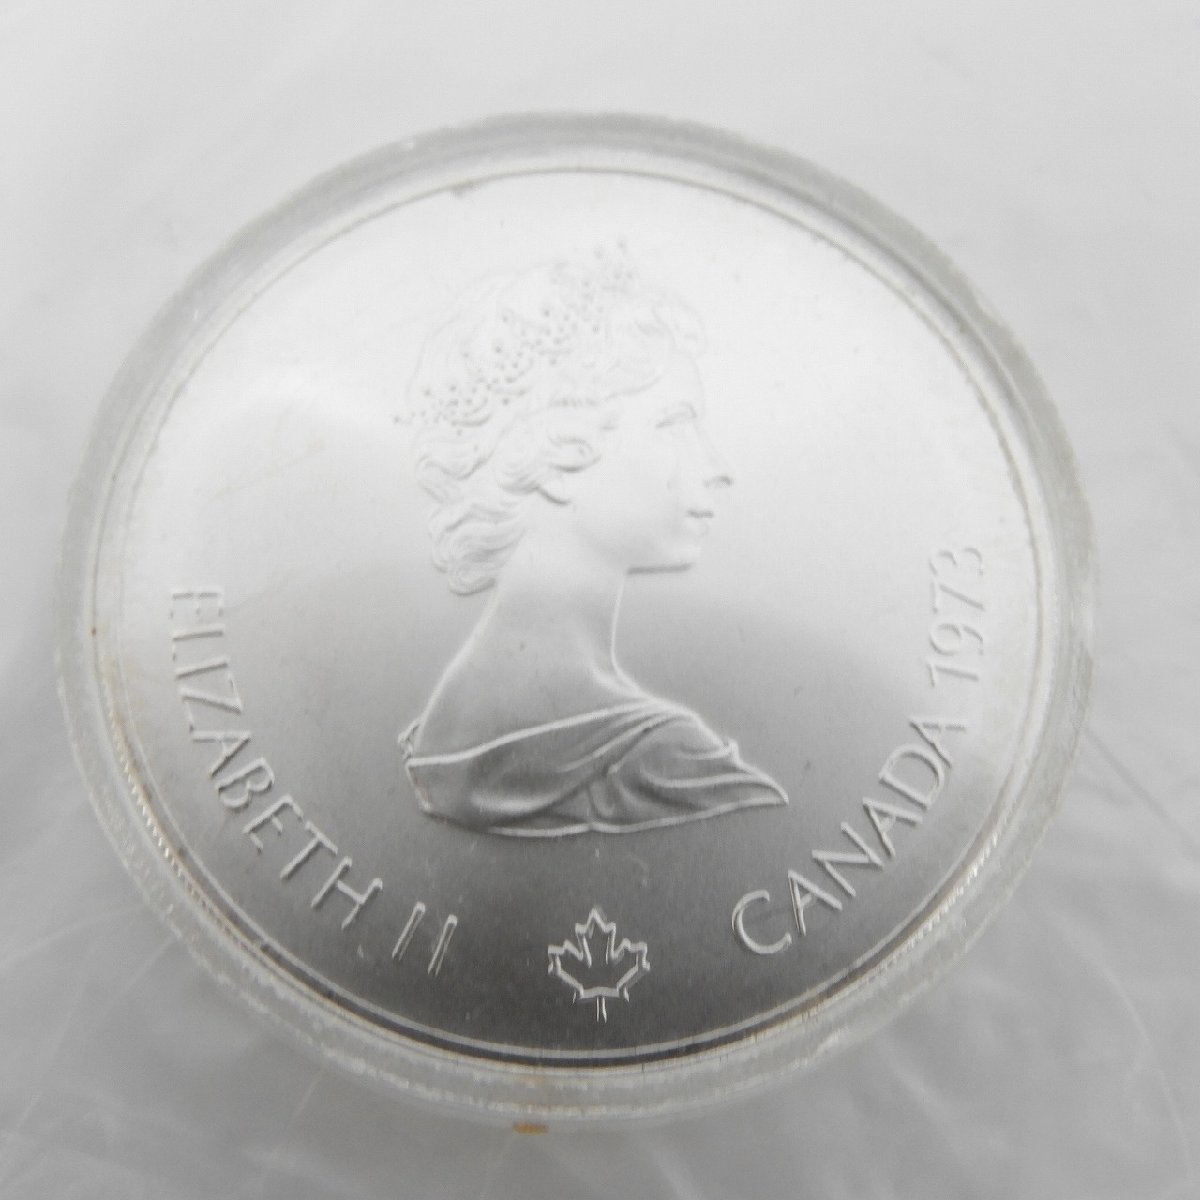 【記念貨幣】モントリオールオリンピック 1976 記念銀貨 エリザベス女王 5ドル 2枚セット 903324300 1104_画像2